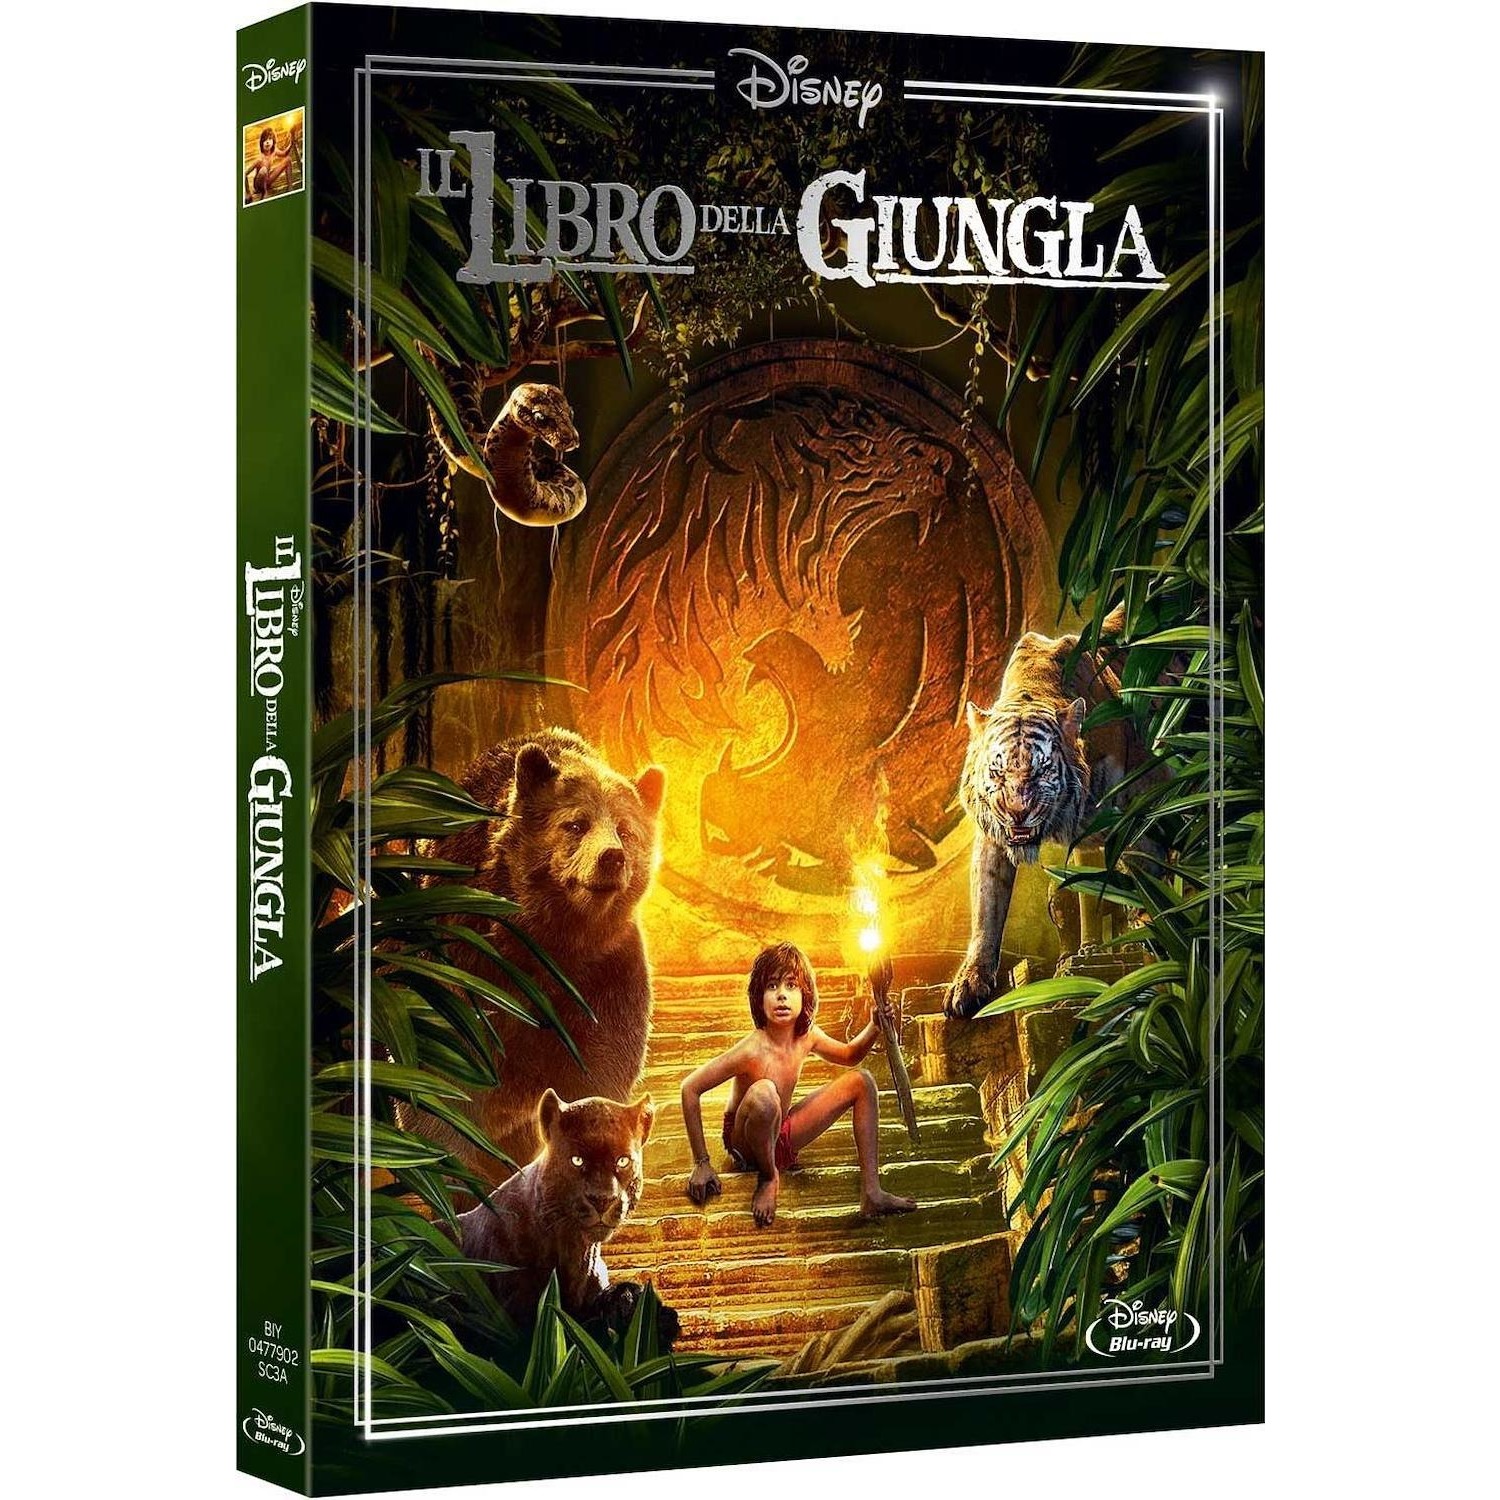 Immagine per DVD Il Libro della giungla (live action) repack da DIMOStore